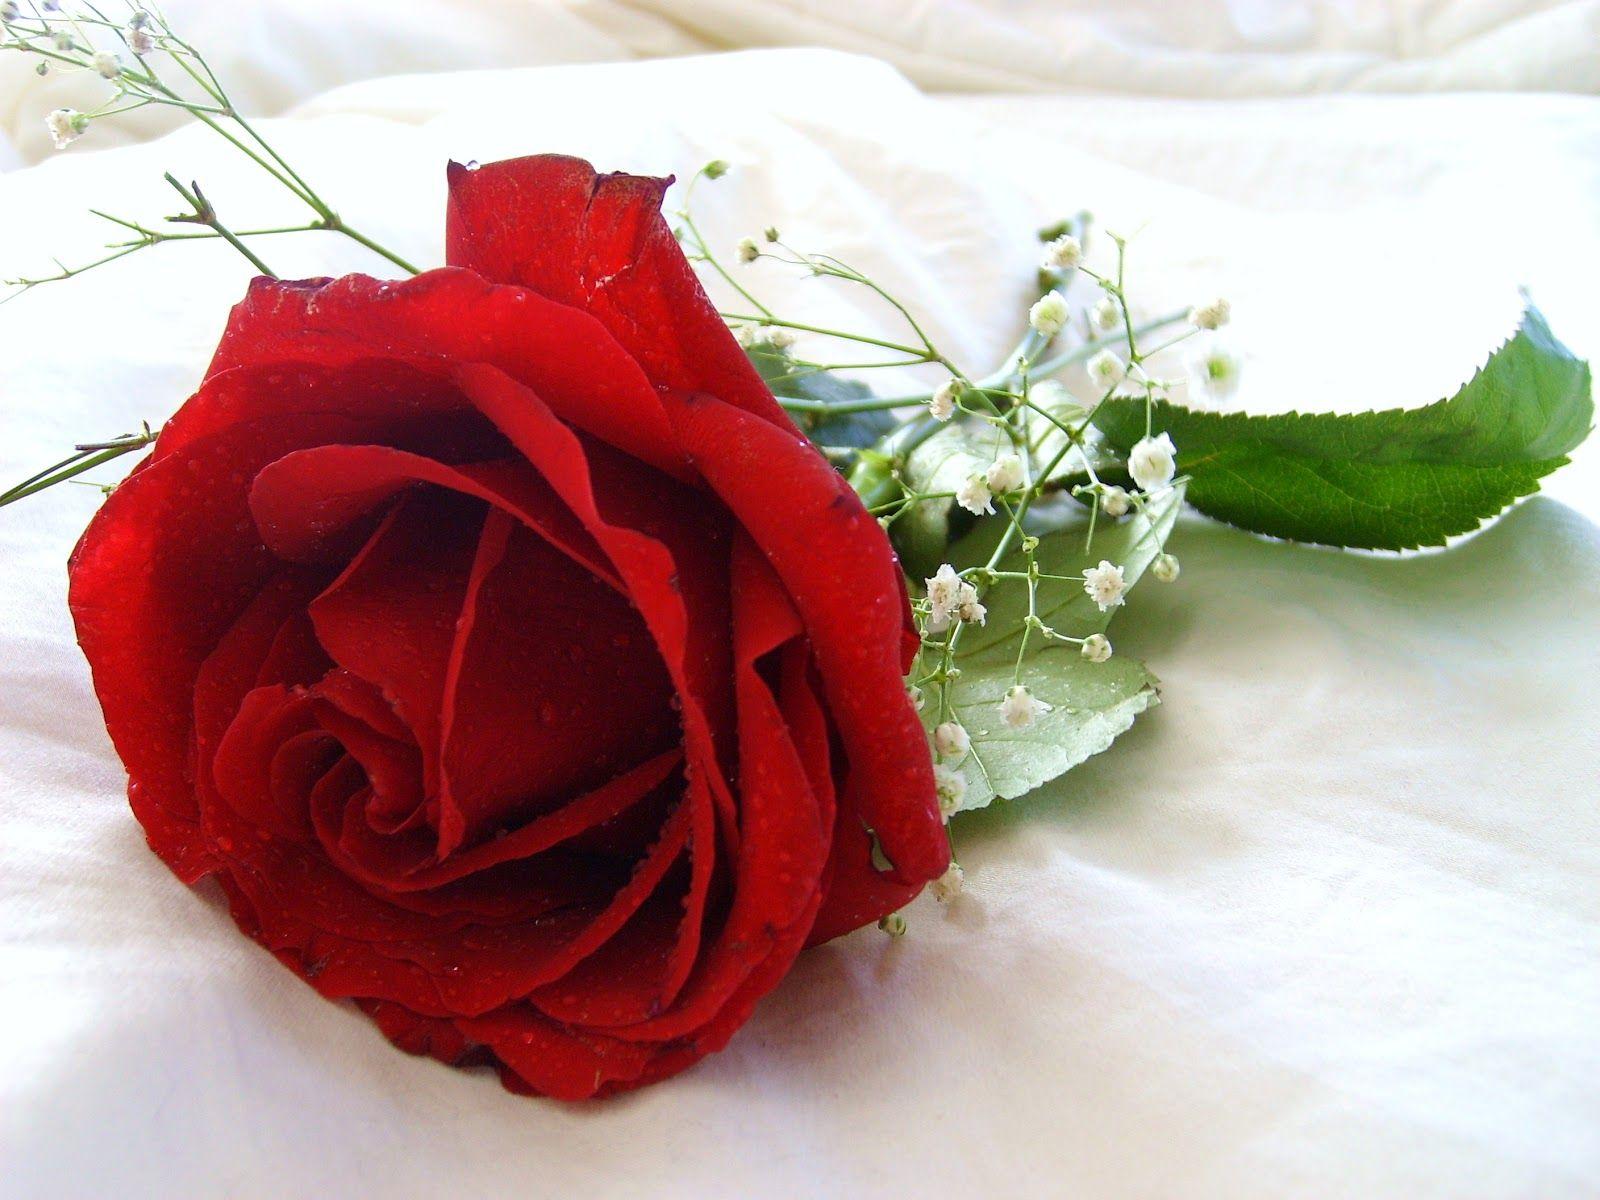 Gul yuzim. Цветы розы. Розы красные и белые.